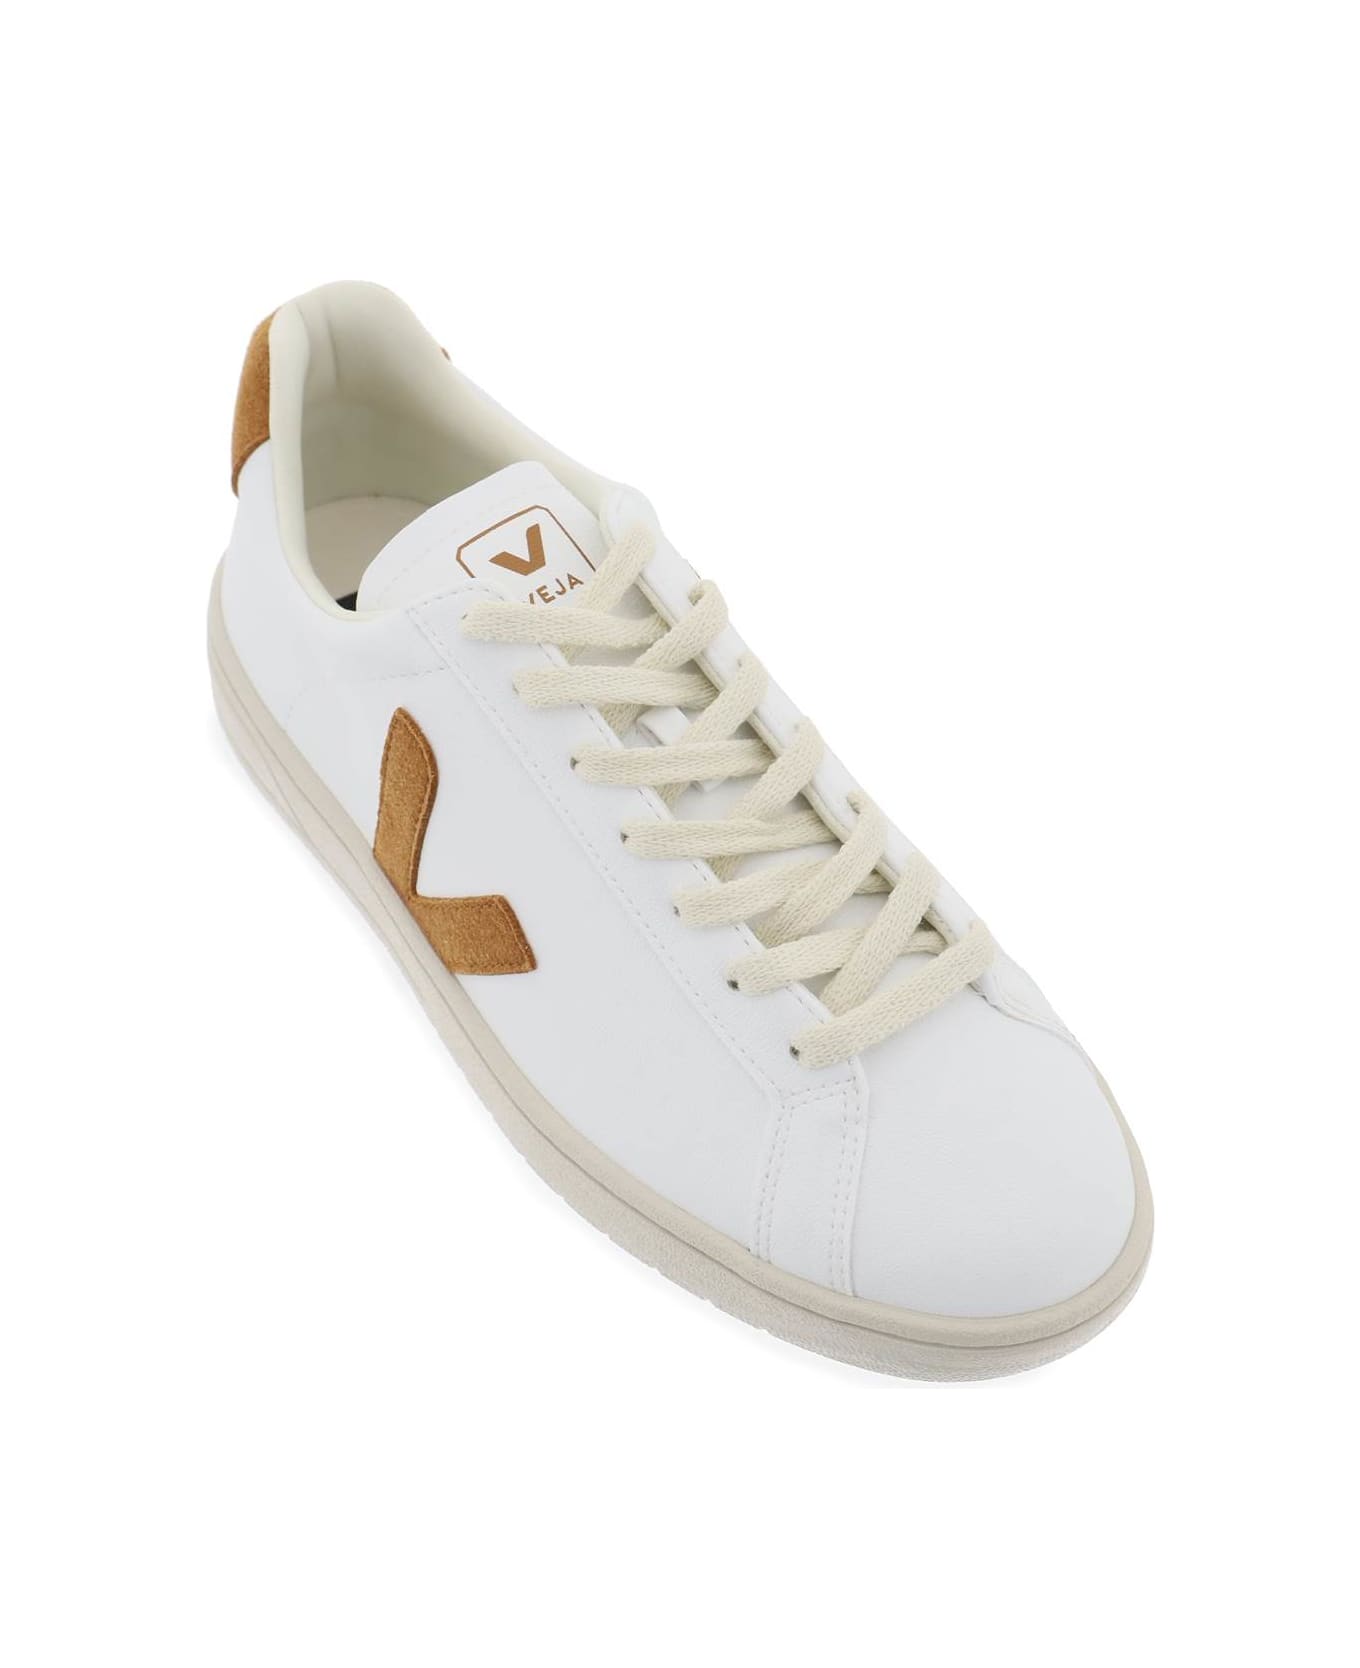 Veja 'urca' Vegan Sneakers - WHITE CAMEL (White)